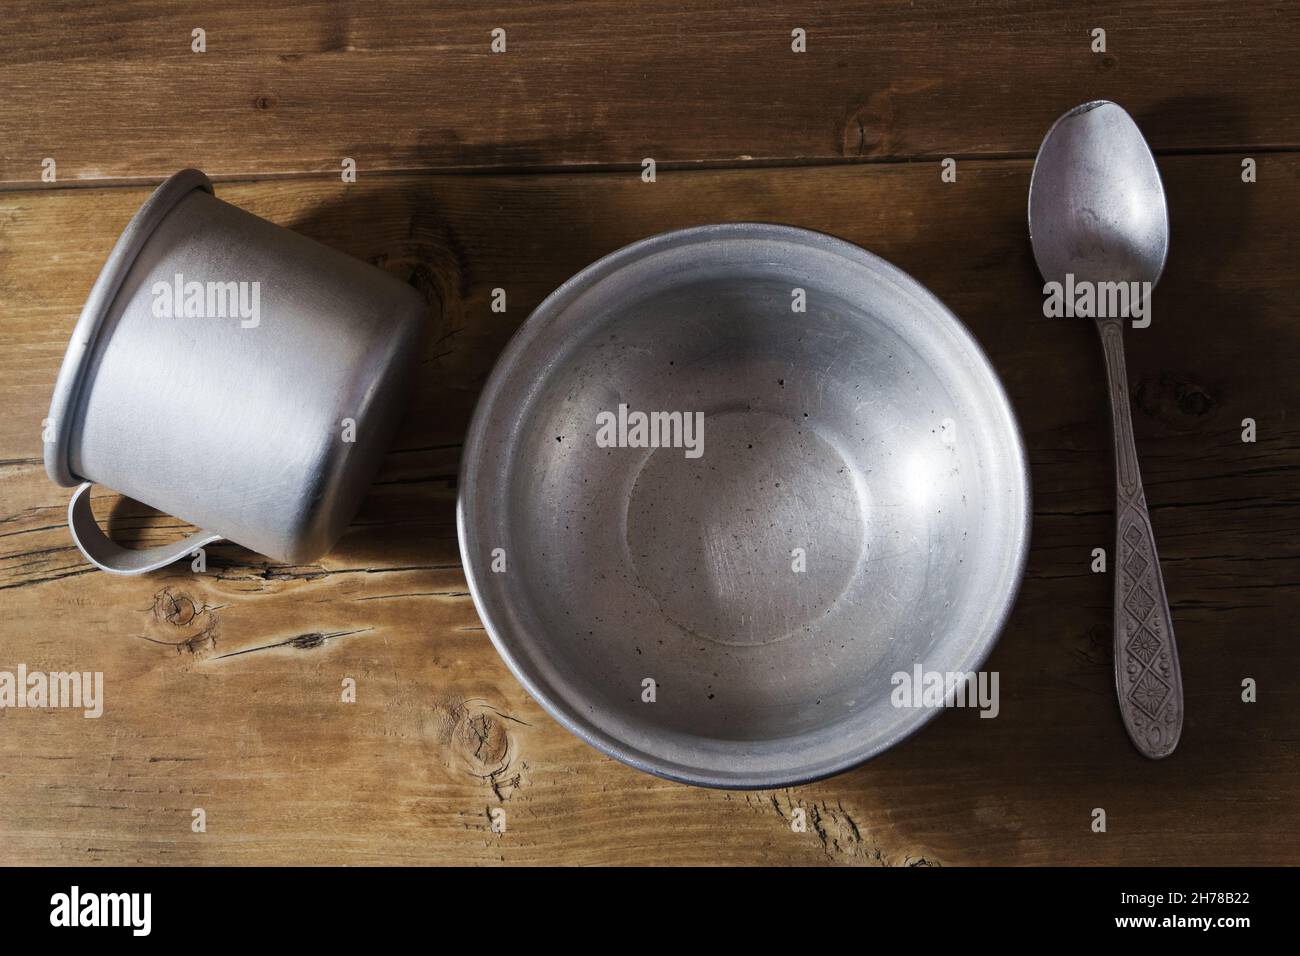 Vider le plat en aluminium, la cuillère et le gobelet sur l'ancienne table en bois Banque D'Images